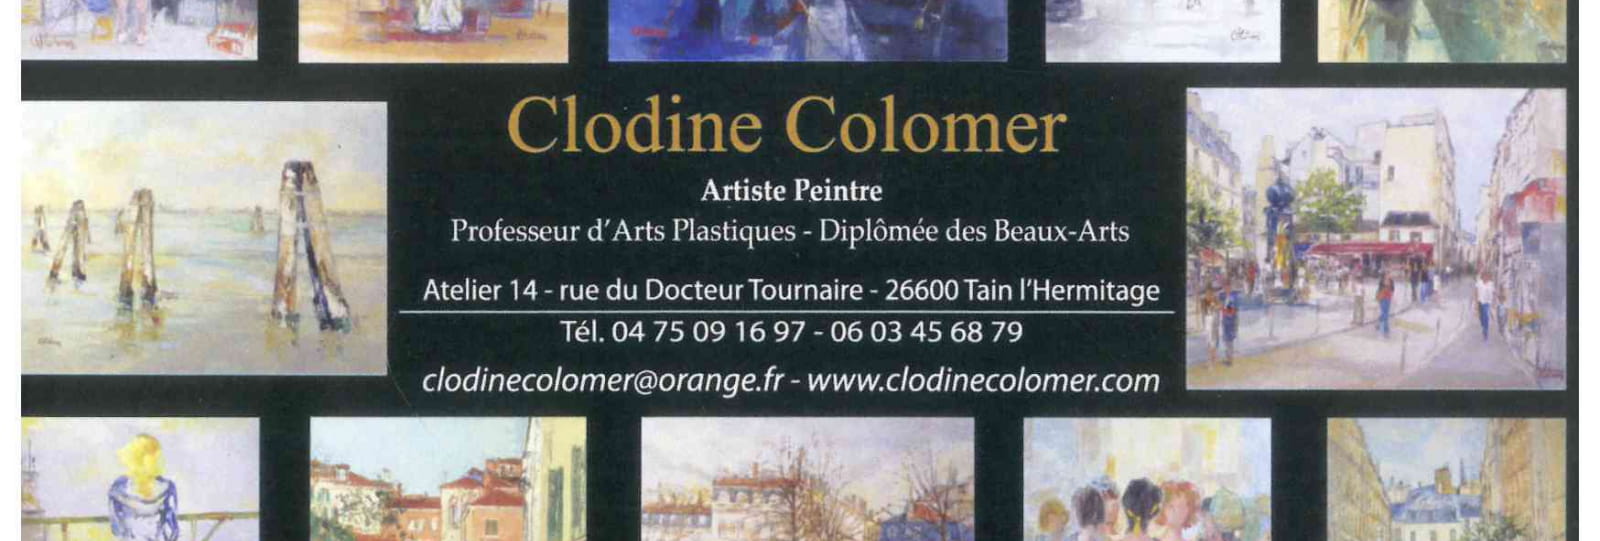 Clodine Colomer